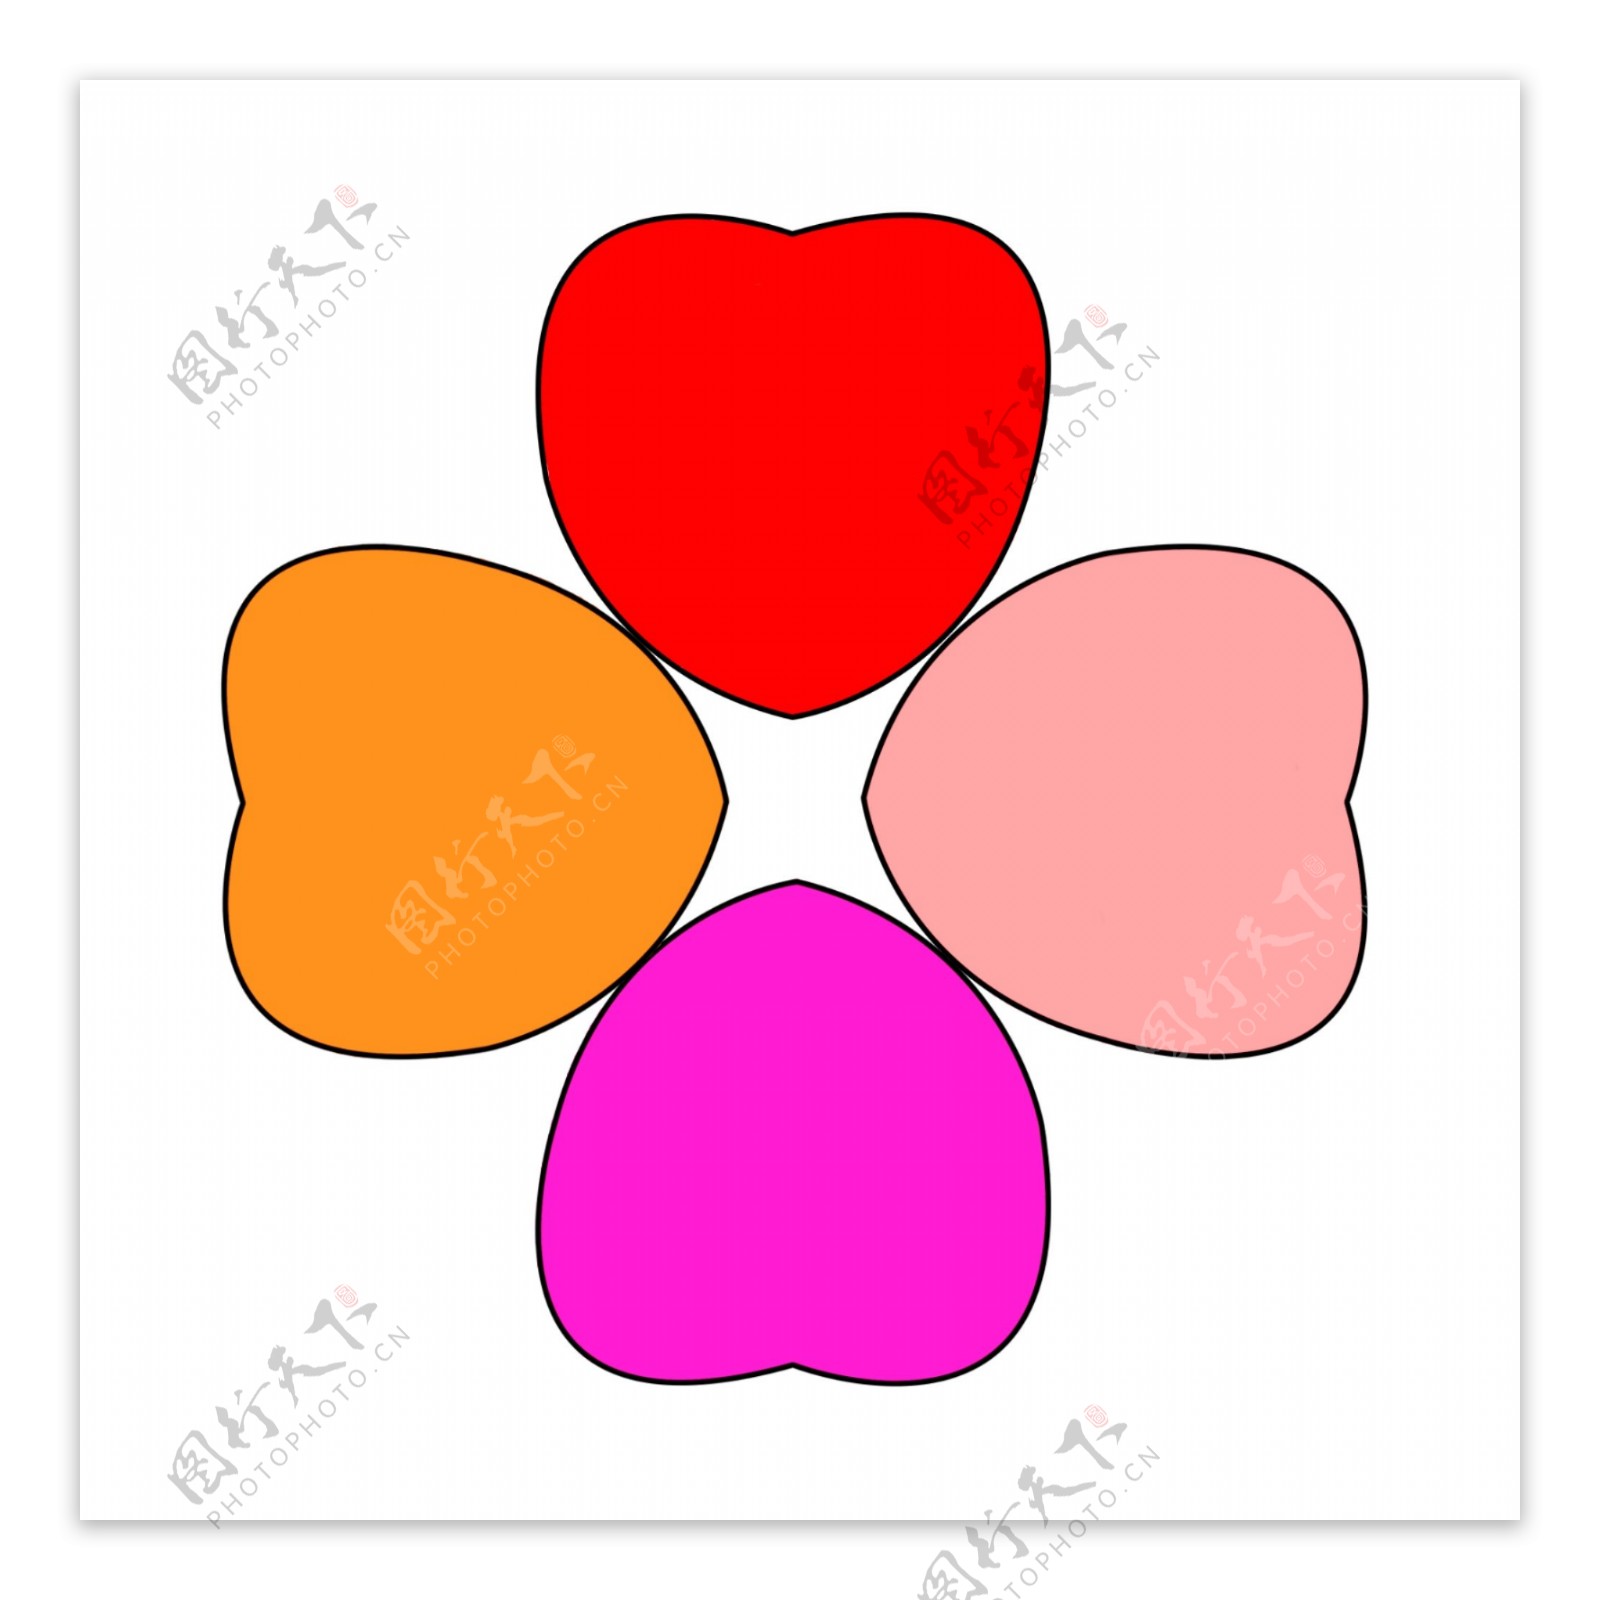 四种颜色的心组成的花